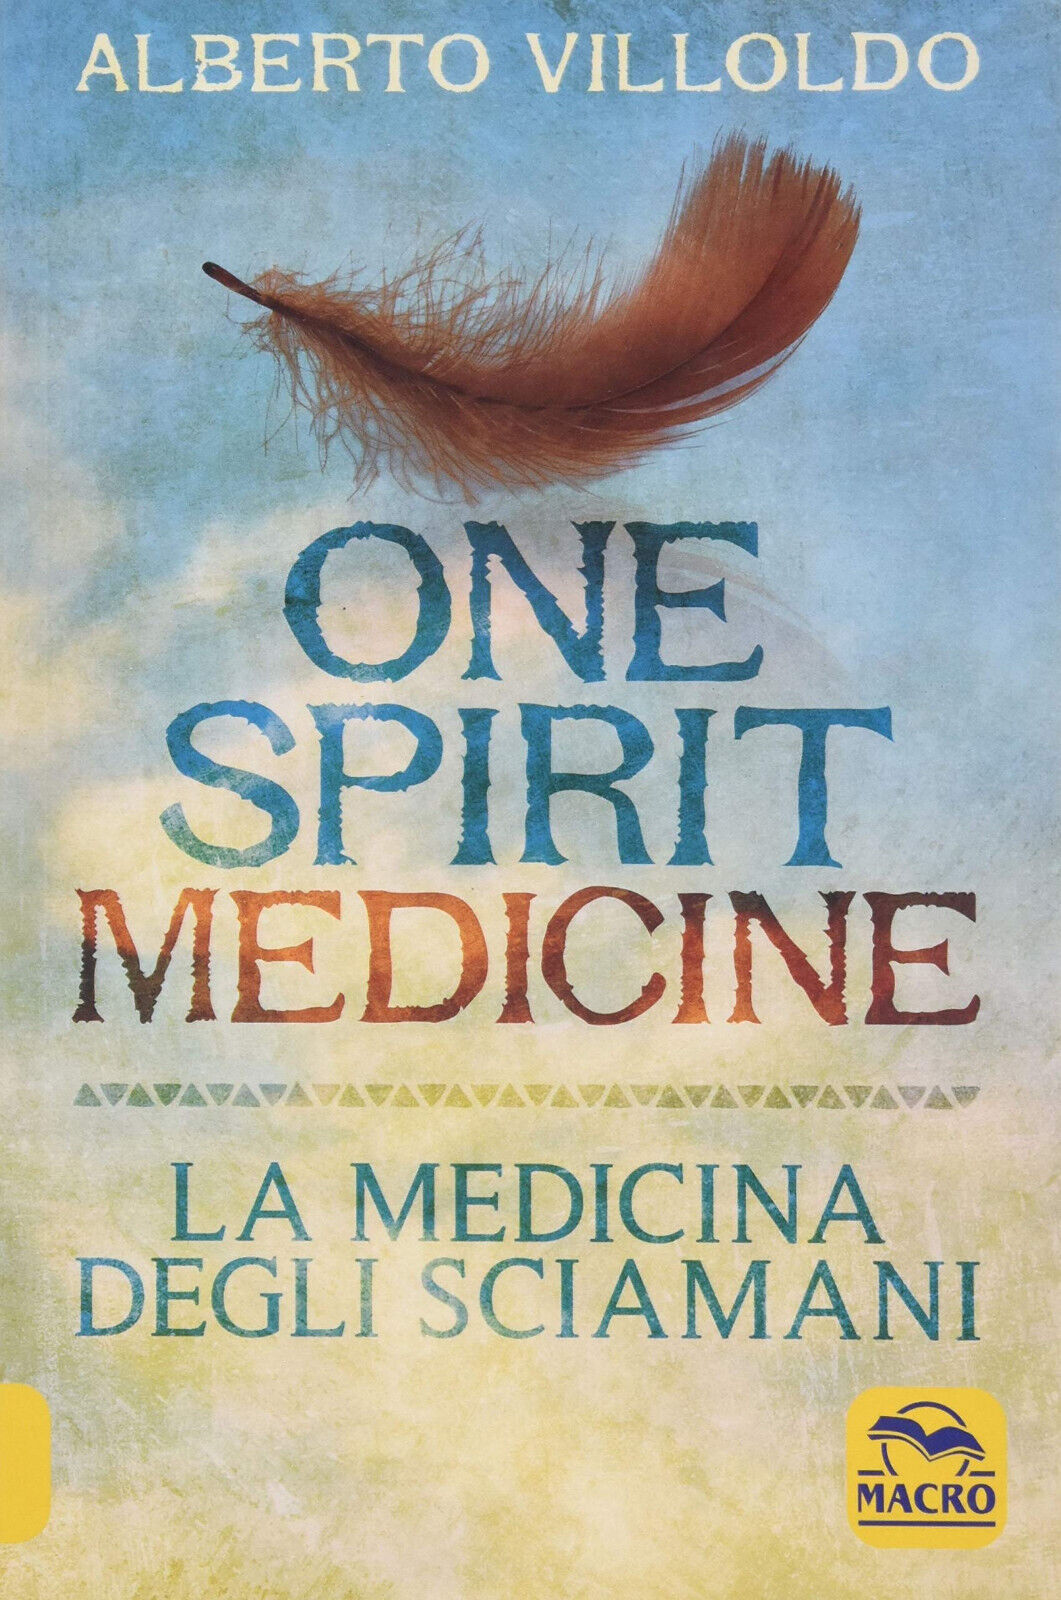 One Spirit Medicine - La Medicina degli Sciamani - Alberto Villoldo - 2020